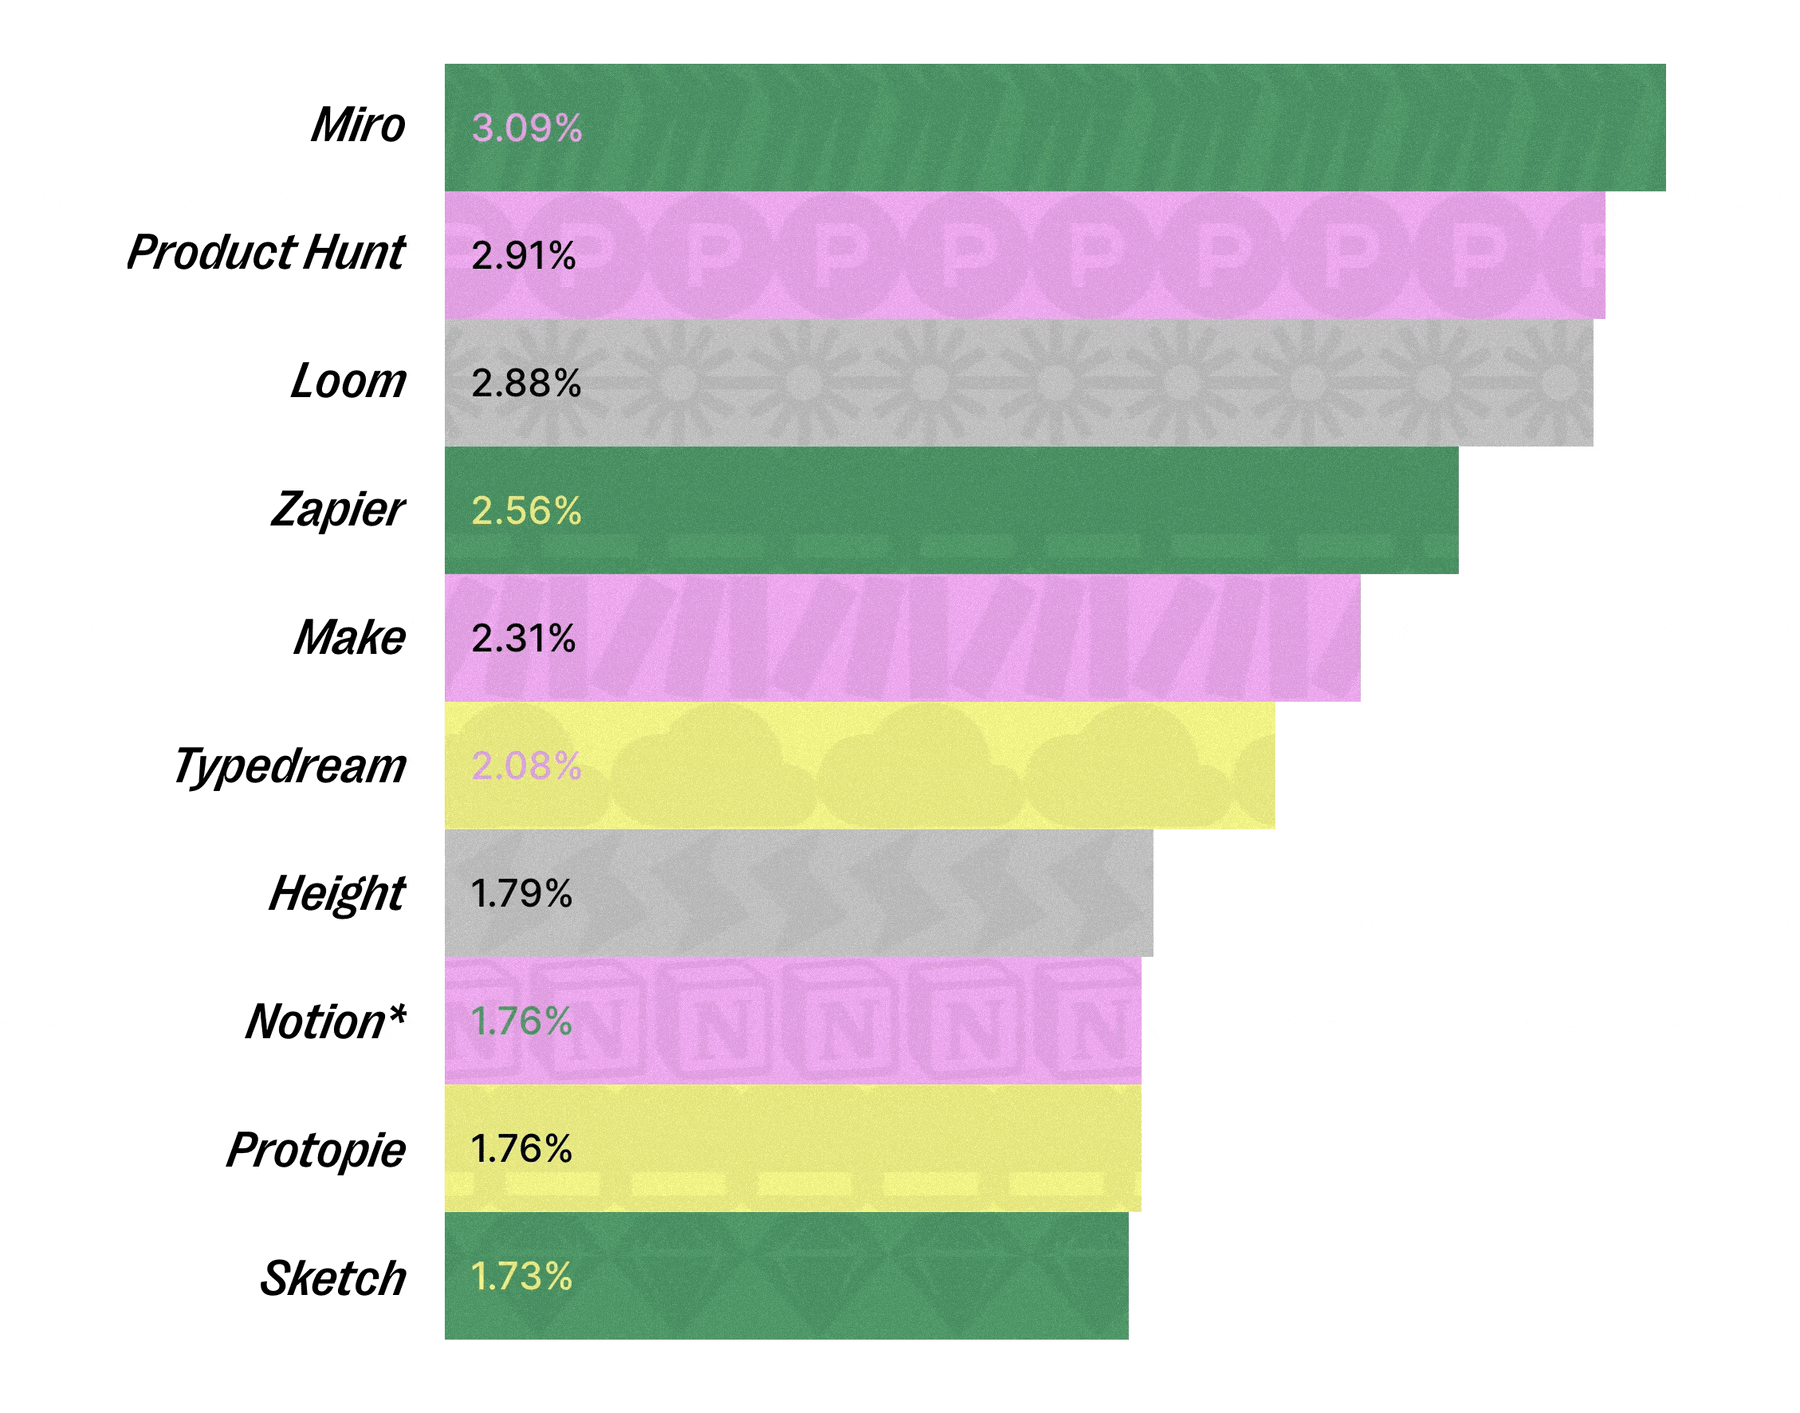 Bar chart of most popular tools